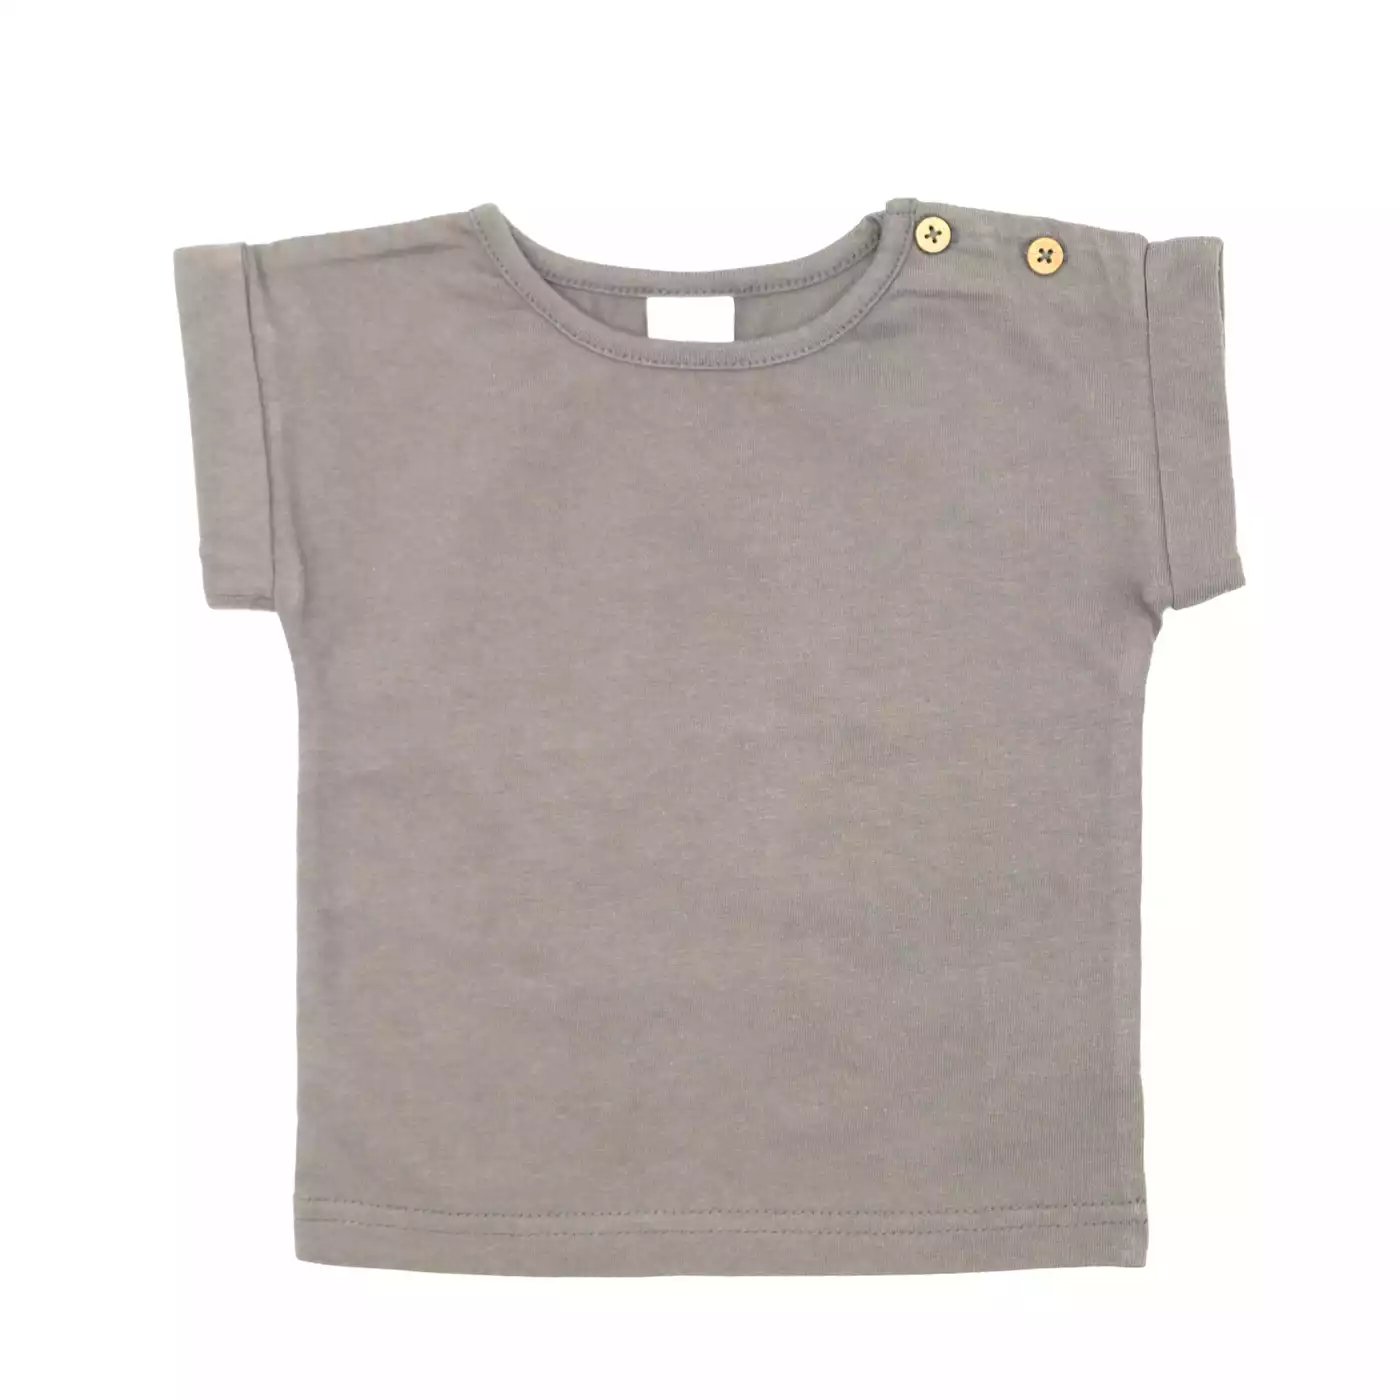 T-Shirt Basic Savannah LITTLE Grau Anthrazit 2004578448408 1